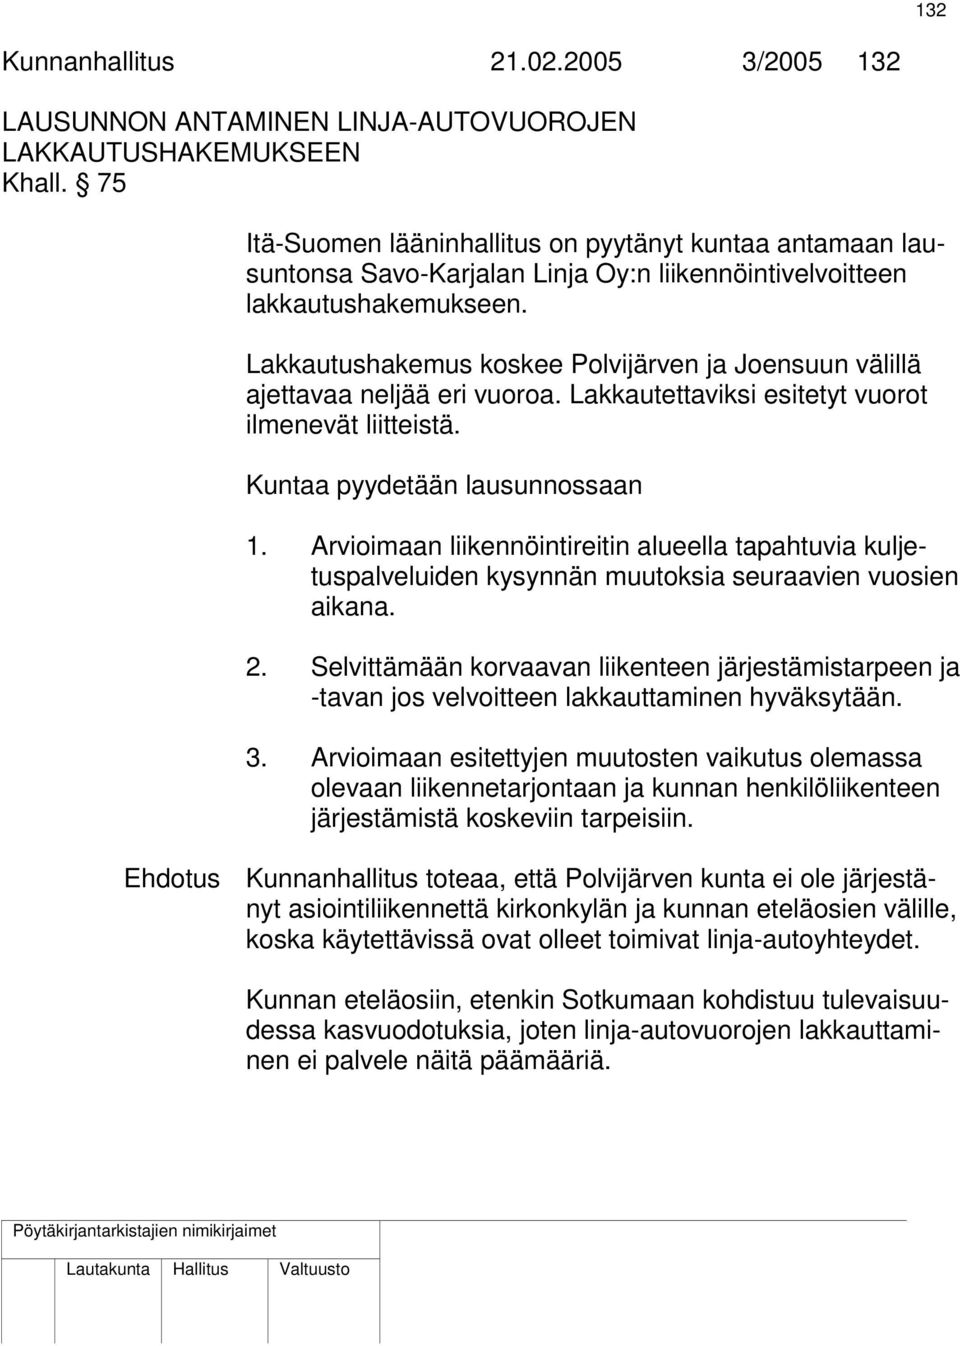 Lakkautushakemus koskee Polvijärven ja Joensuun välillä ajettavaa neljää eri vuoroa. Lakkautettaviksi esitetyt vuorot ilmenevät liitteistä. Kuntaa pyydetään lausunnossaan 1.